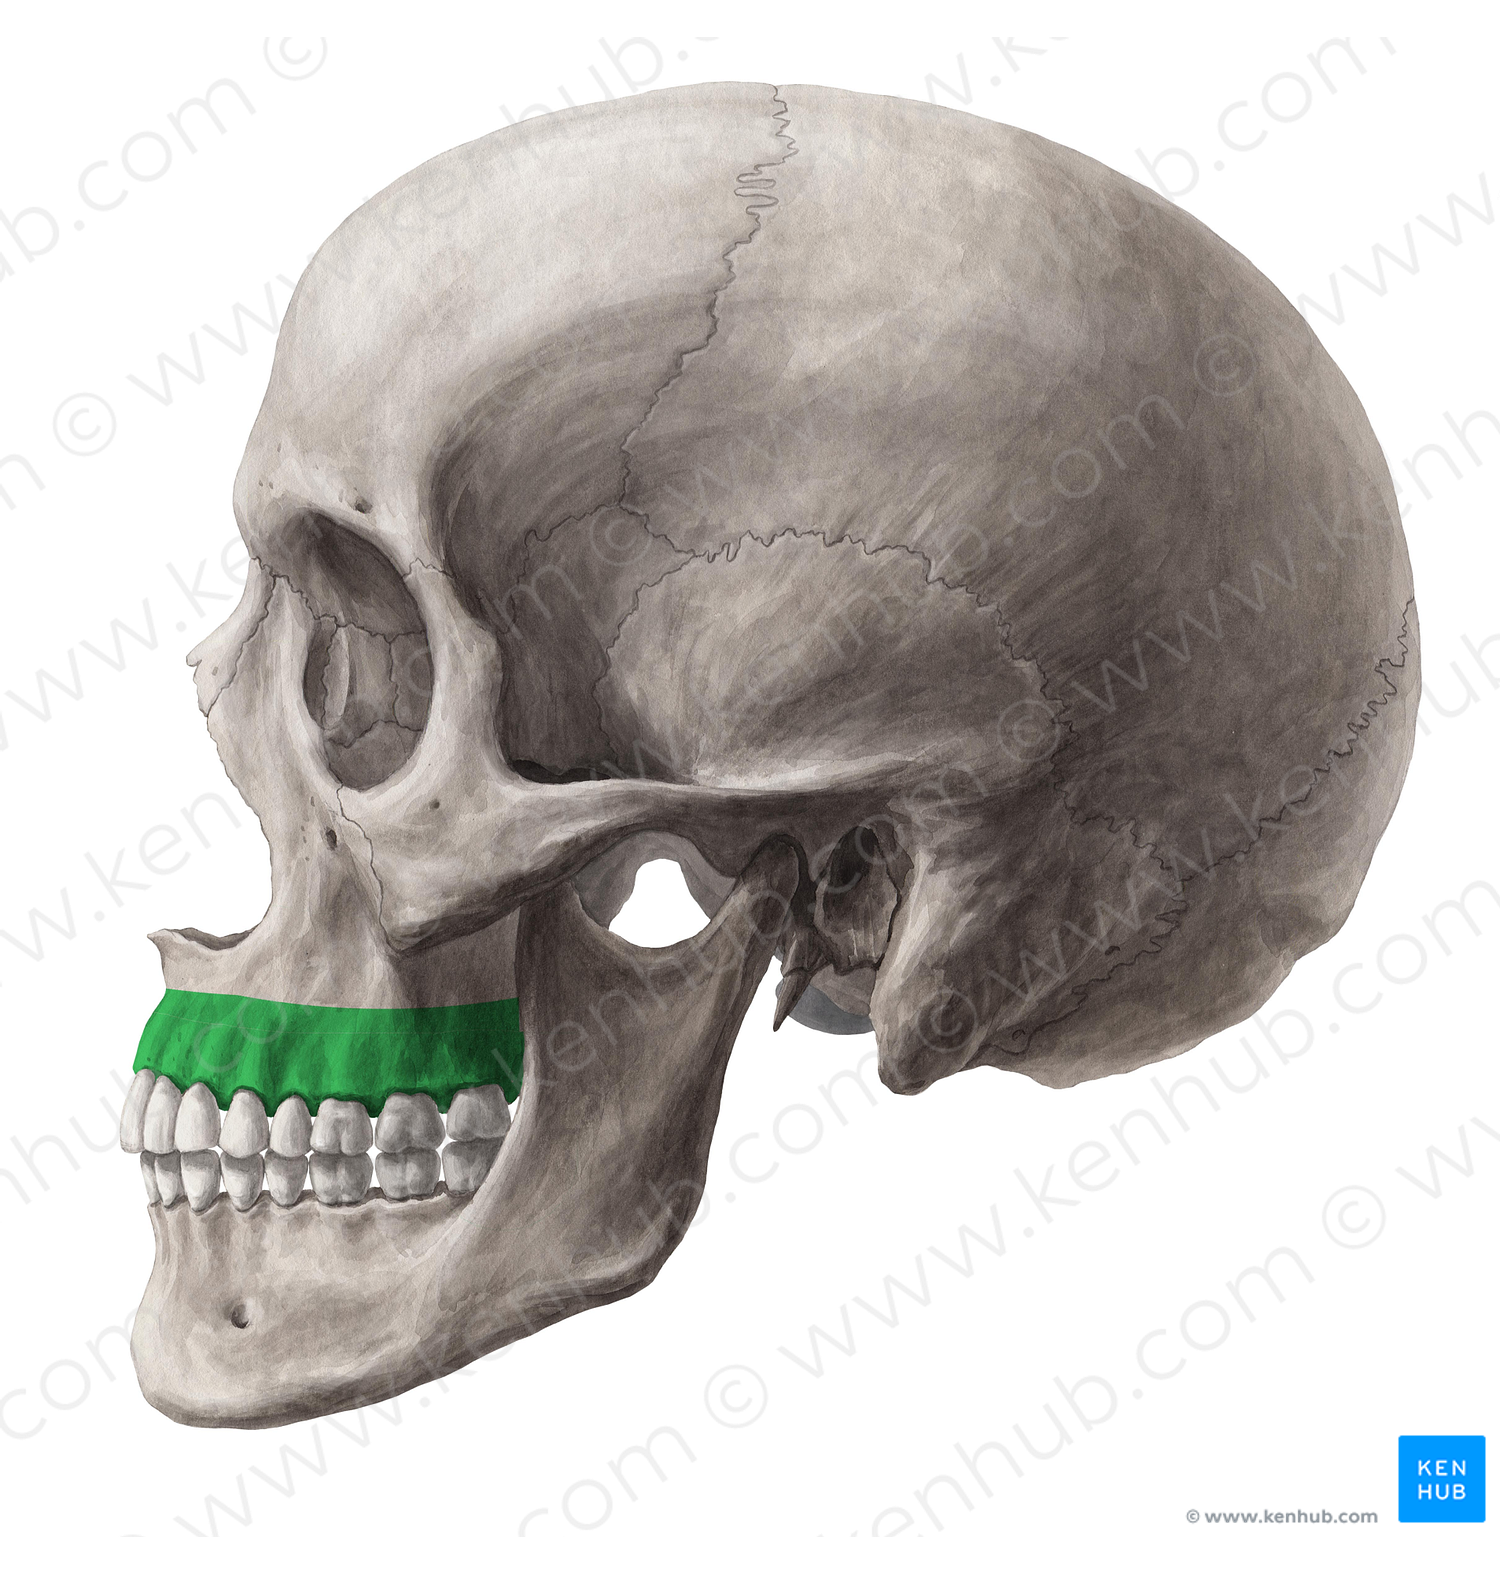 Alveolar process of maxilla (#8157)